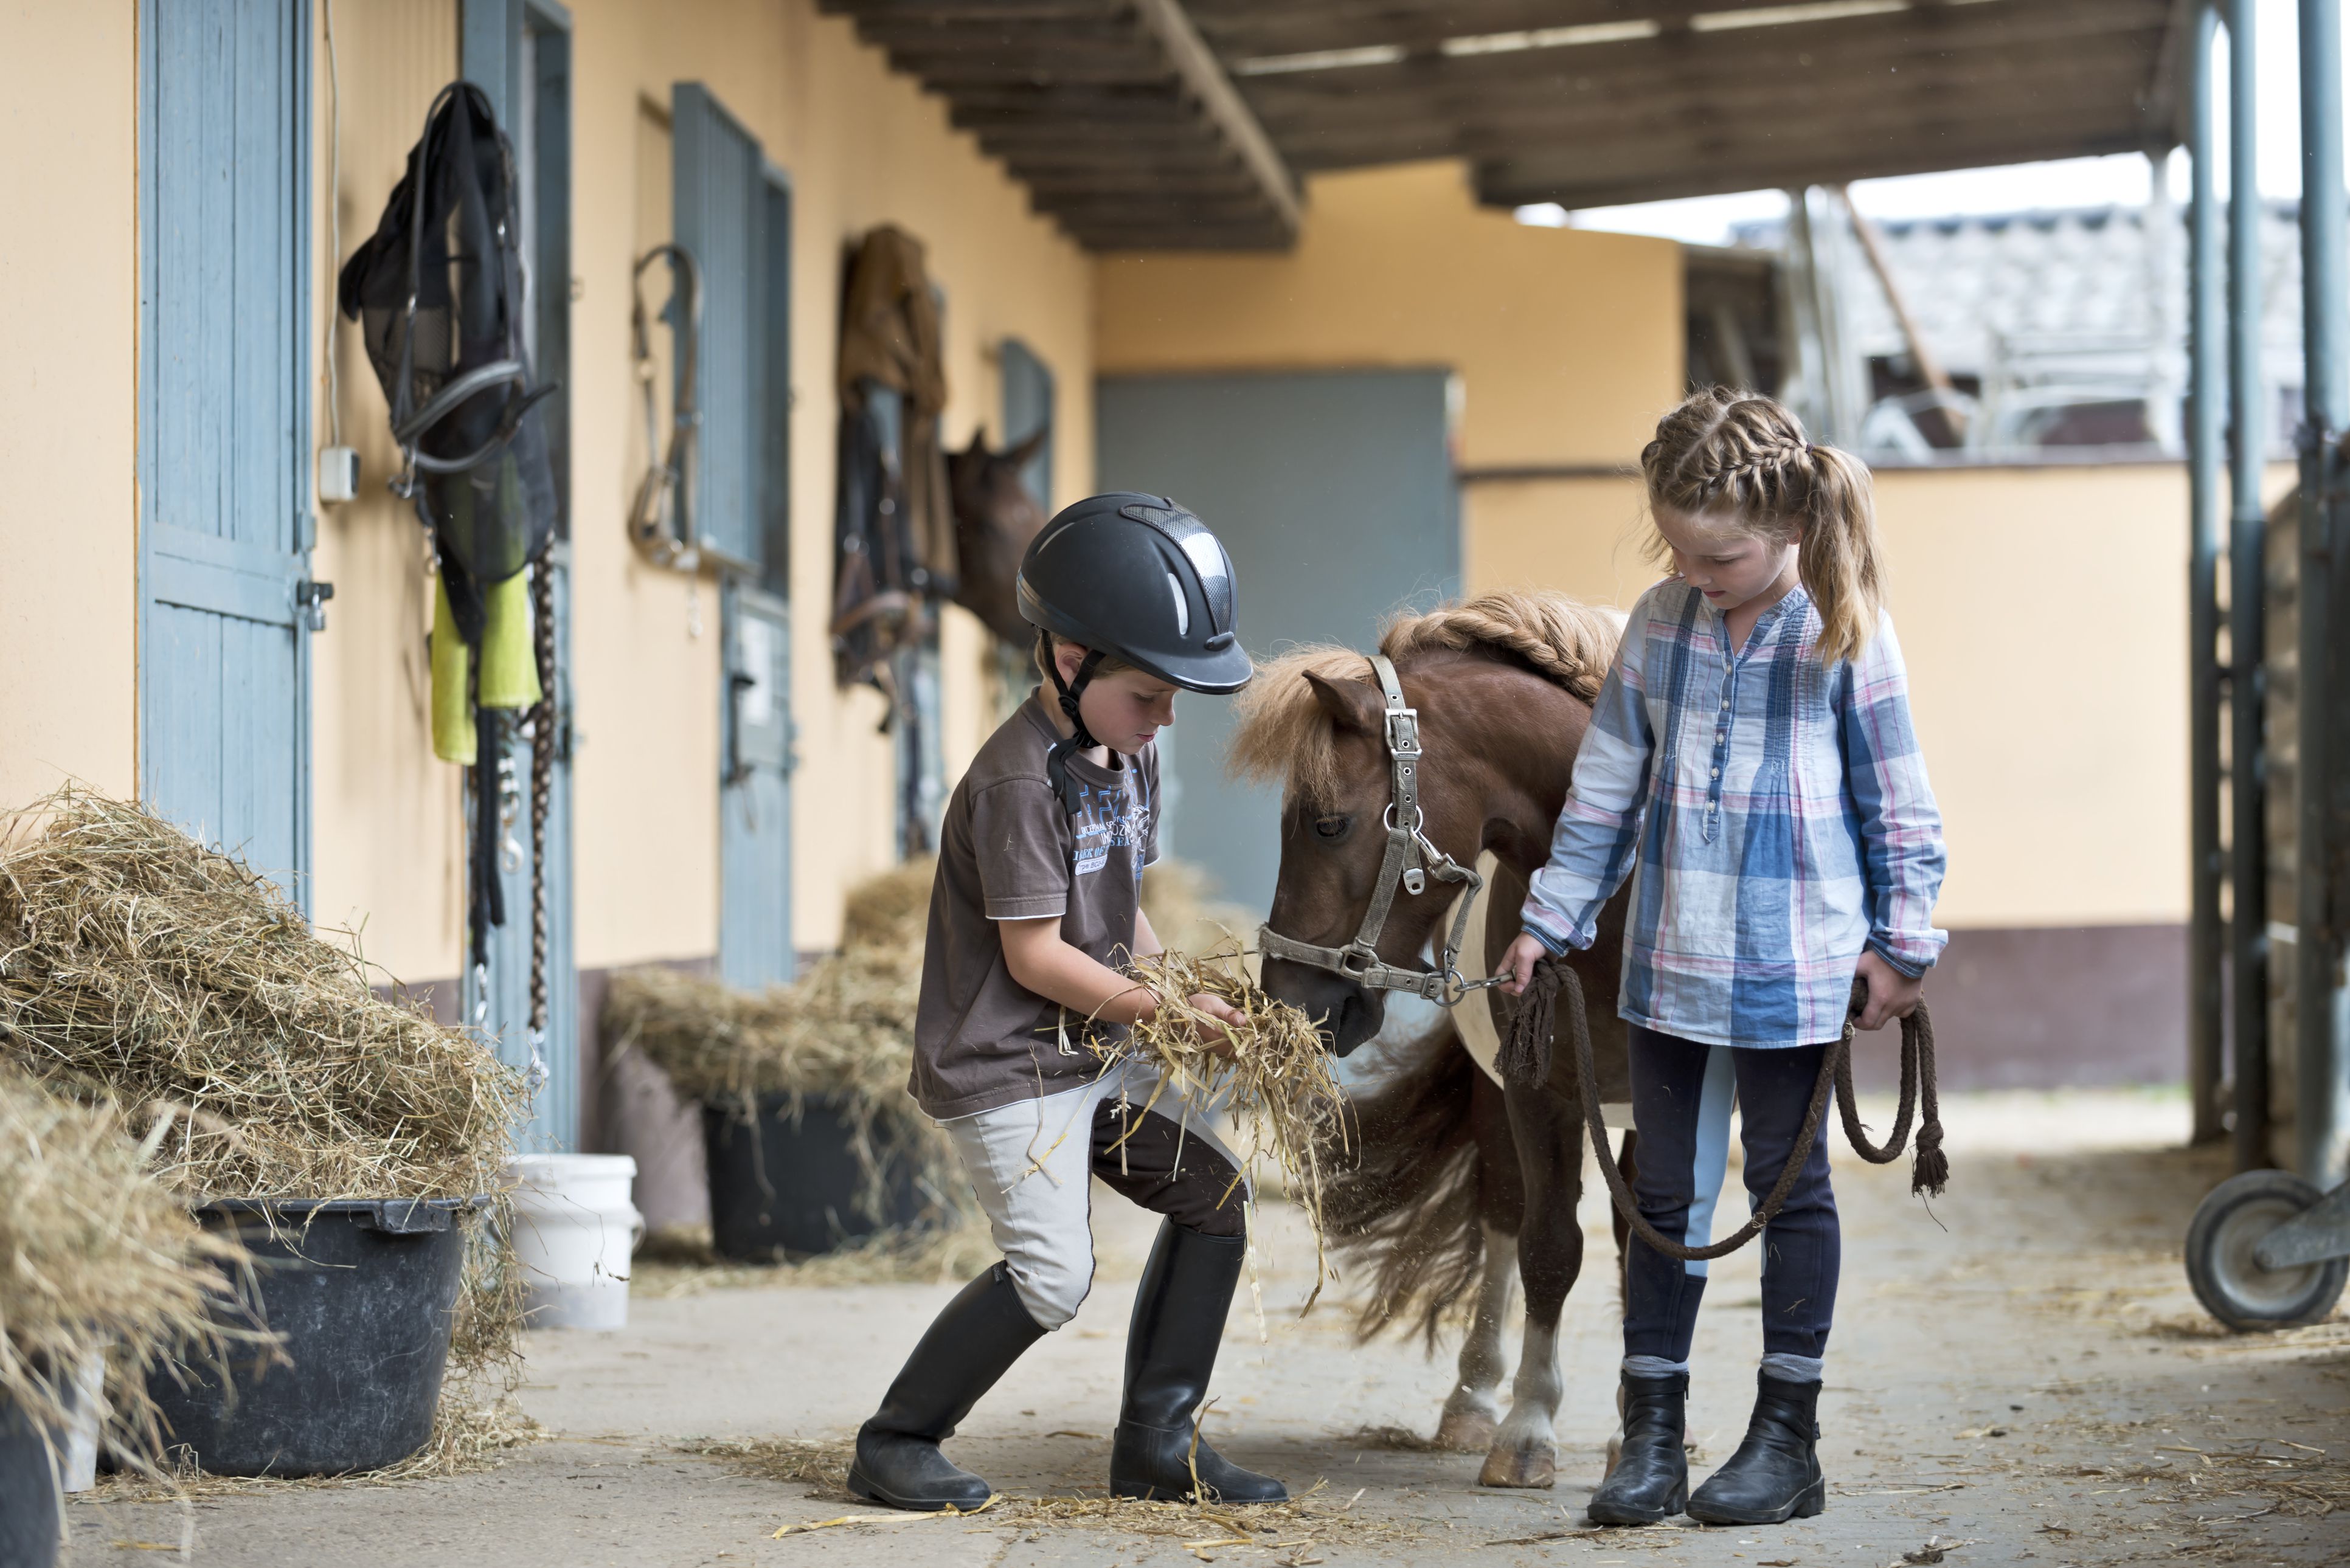 Children feeding a Shetland pony